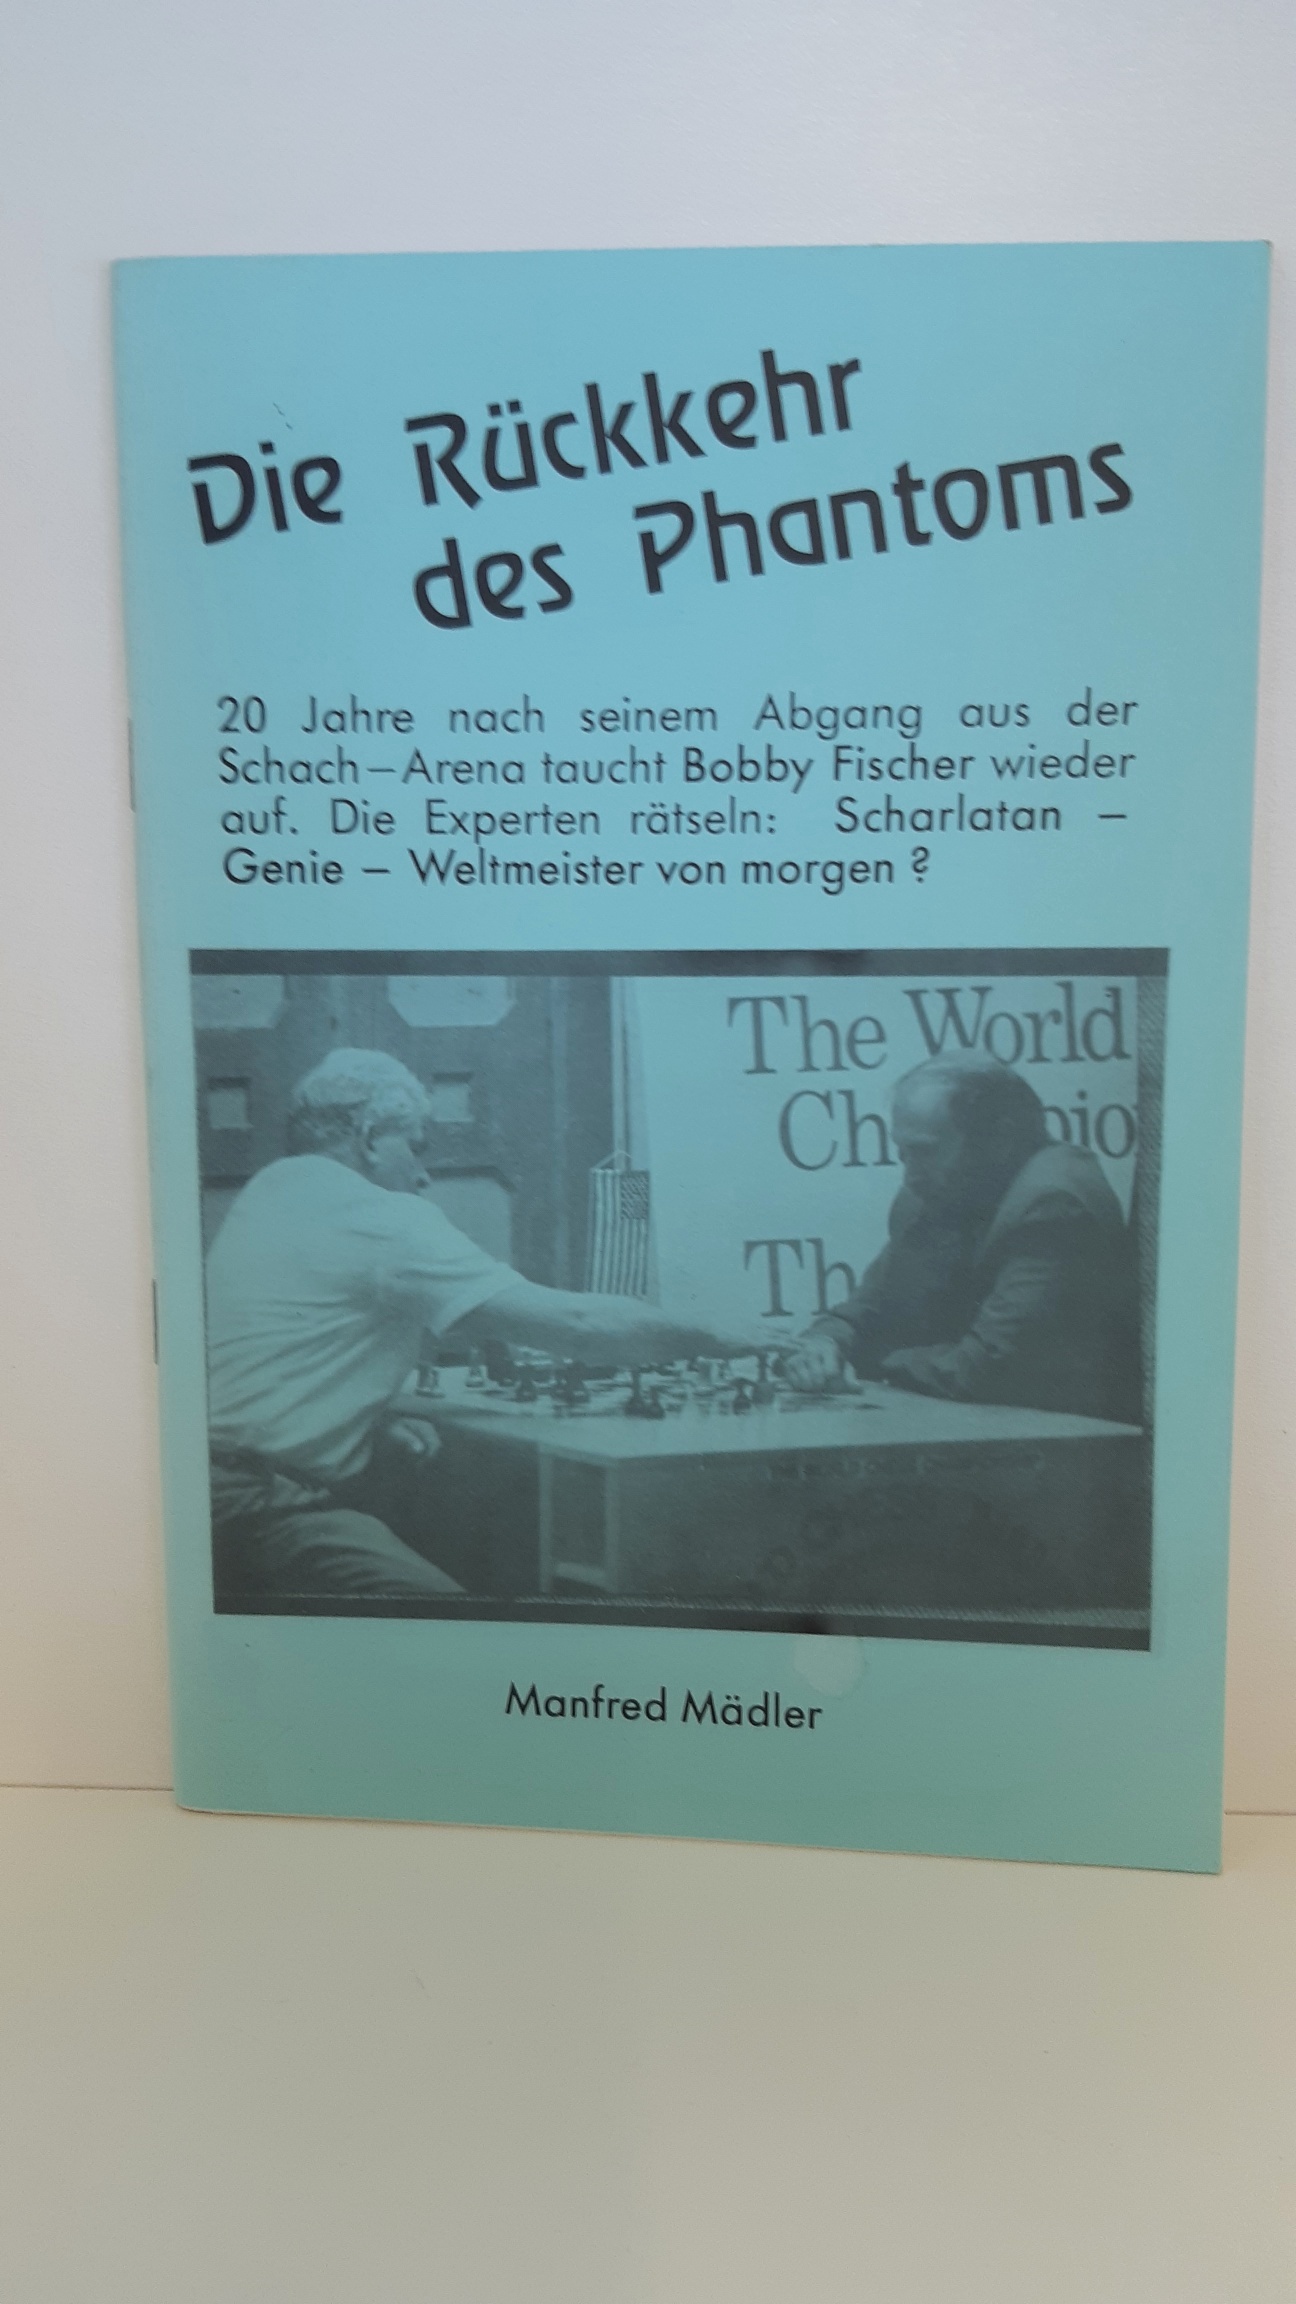 Die Rückkehr des Phantoms 20 Jahre nach seinem Abgang aus der Schach-Arena taucht Bobby Fischer wieder auf. Die Experten rätseln: Scharlatan - Genie - Weltmeister von morgen? - Manfred Mädler